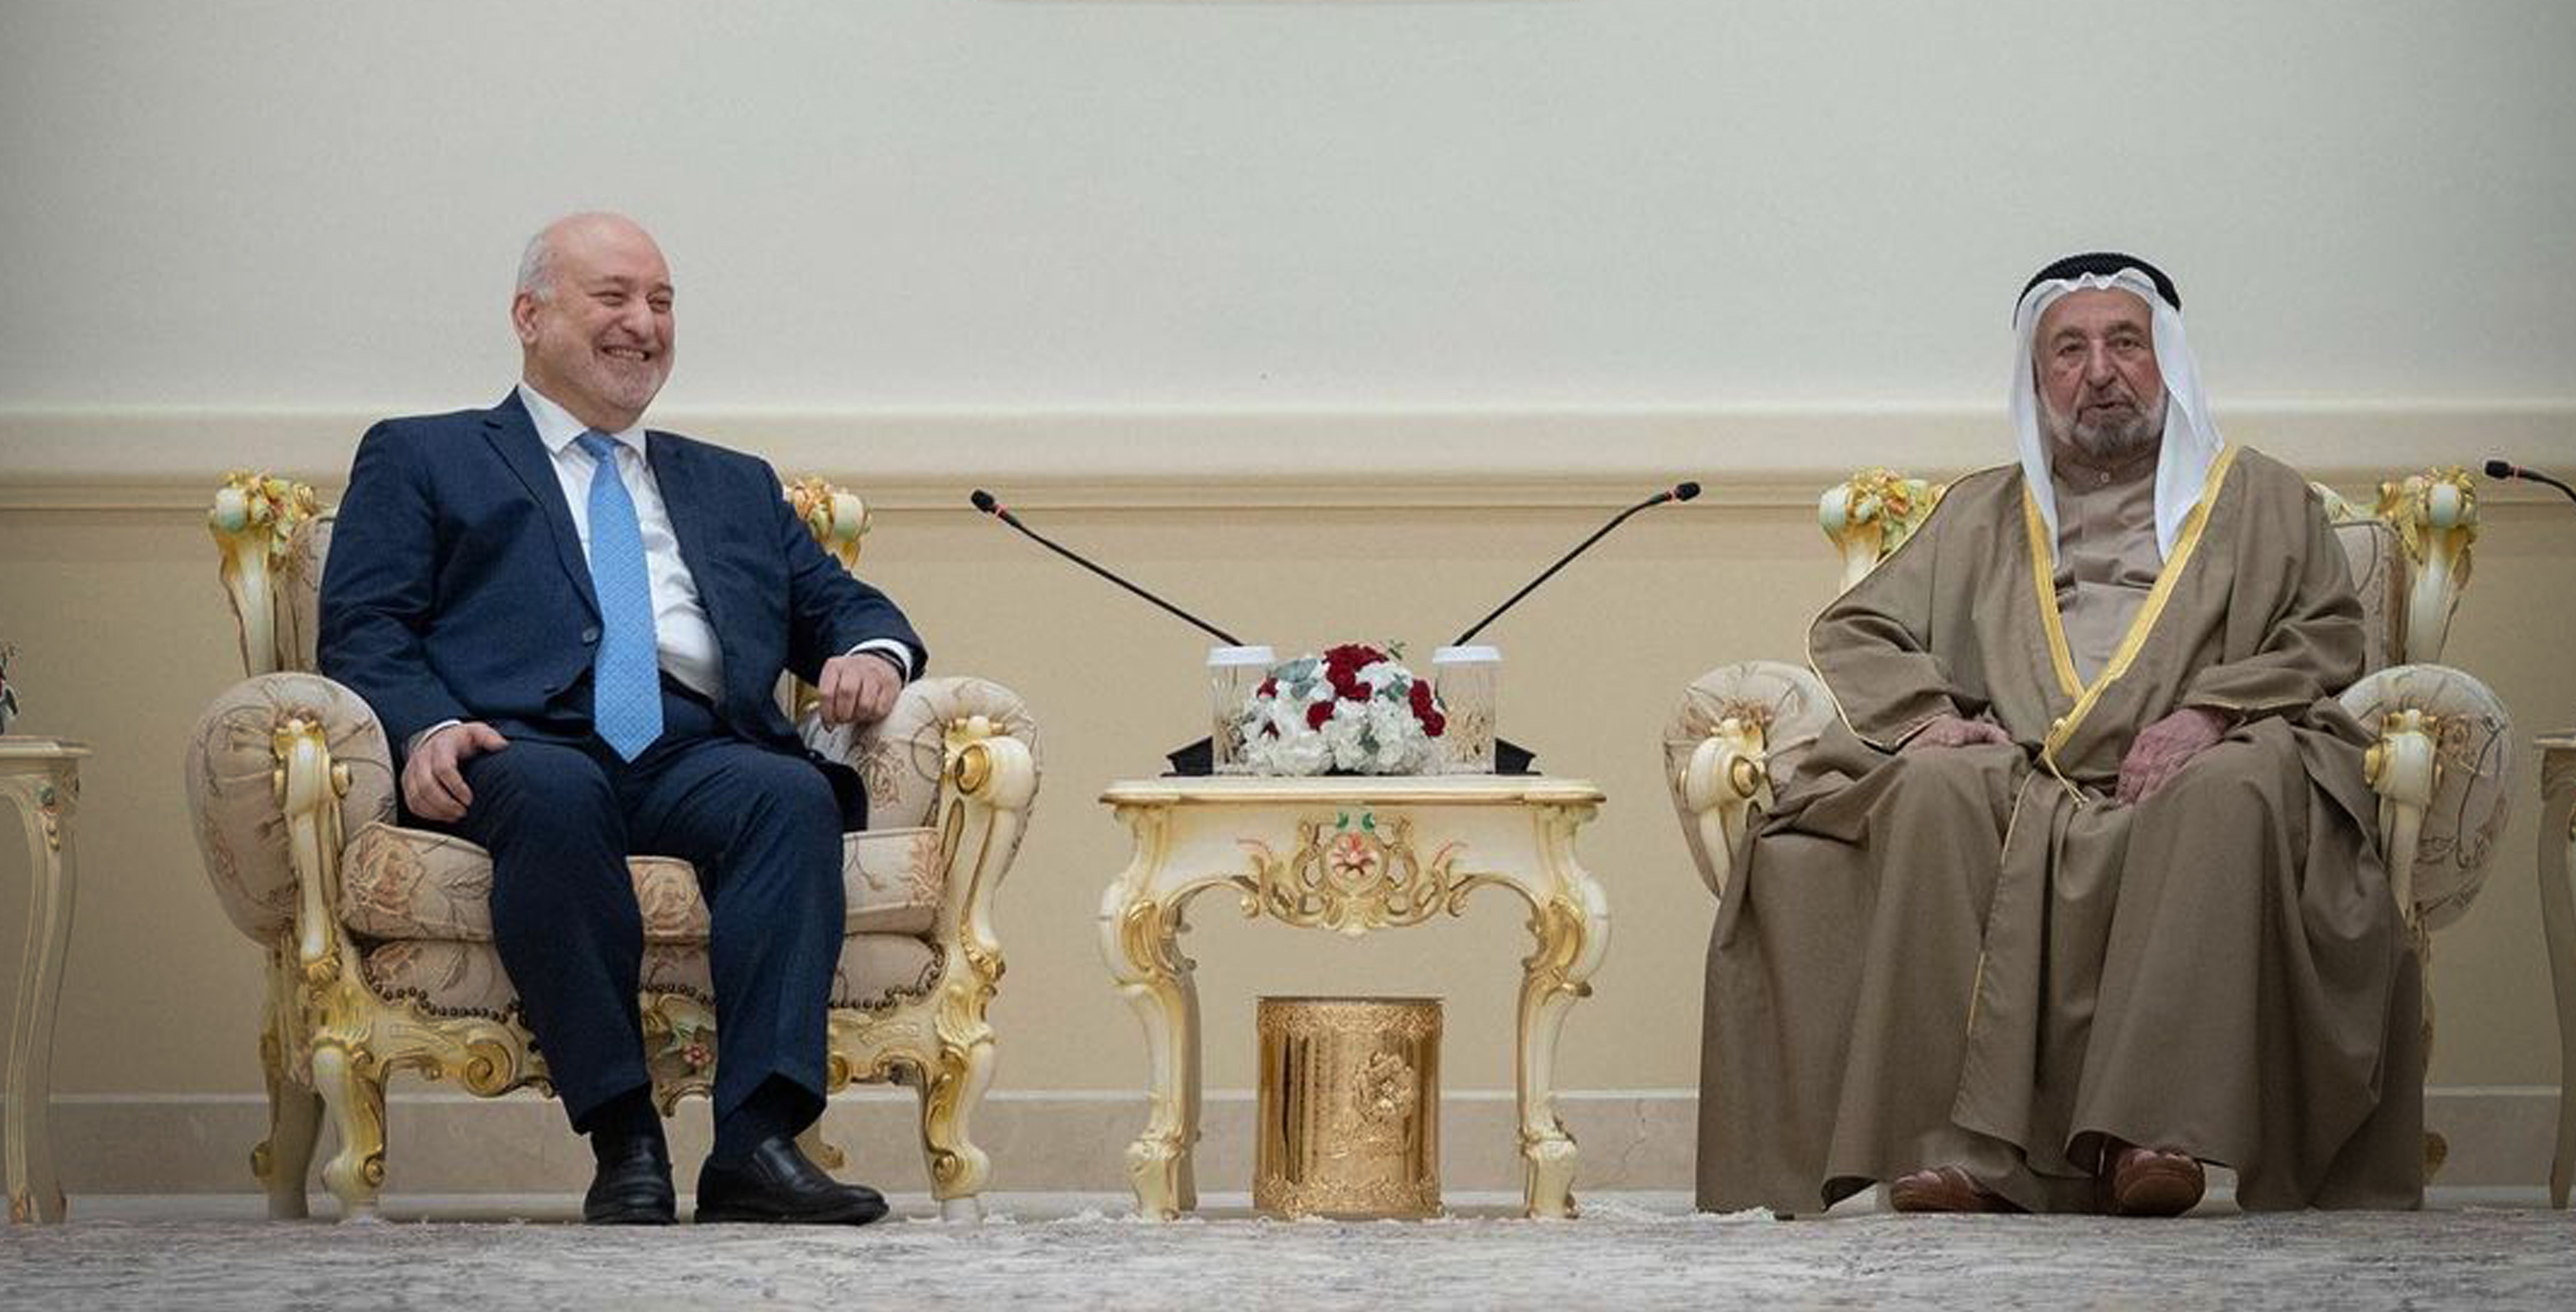 Sharjah Ruler Welcomes SG Khouja and Austrian Cultural Delegation